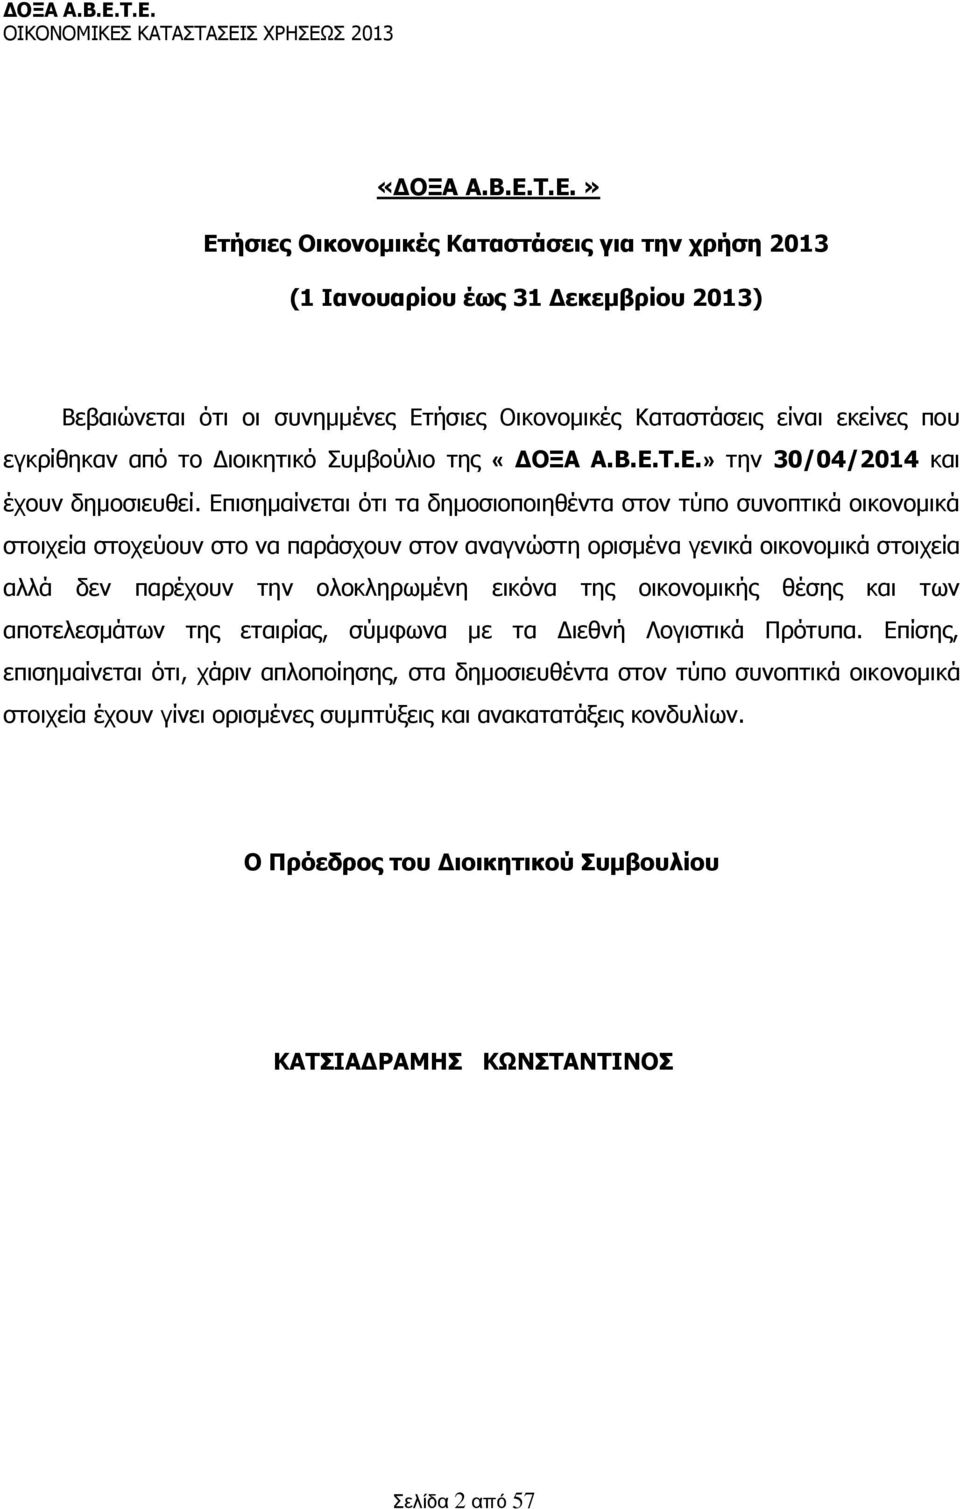 Διοικητικό Συμβούλιο της Τ.Ε.» την 30/04/2014 και έχουν δημοσιευθεί.